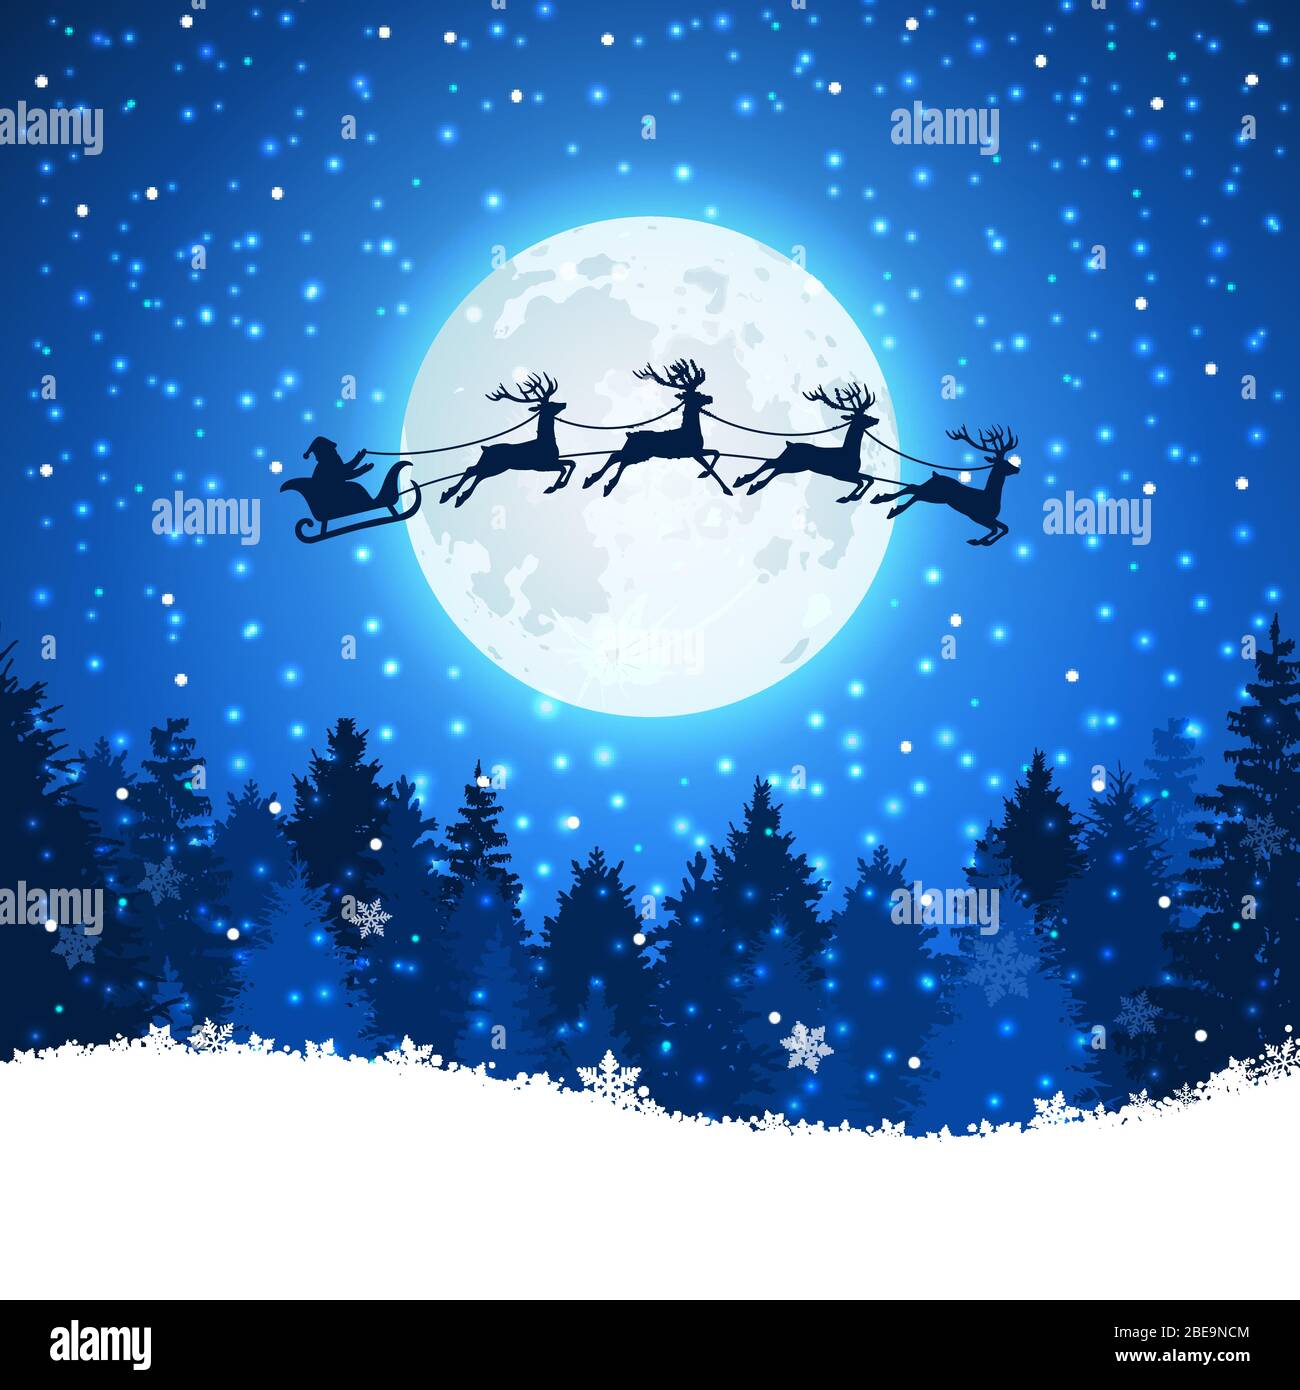 Hình nền Giáng sinh với ông già Noel và tuần lộc bay trên bầu trời giúp bạn cảm nhận được không khí Giáng sinh ấm áp và vui tươi. Tận dụng hình nền này để tạo ra một bức ảnh độc đáo giữa trời đông tuyết rơi và ông già Noel cùng các tuần lộc trung thành.